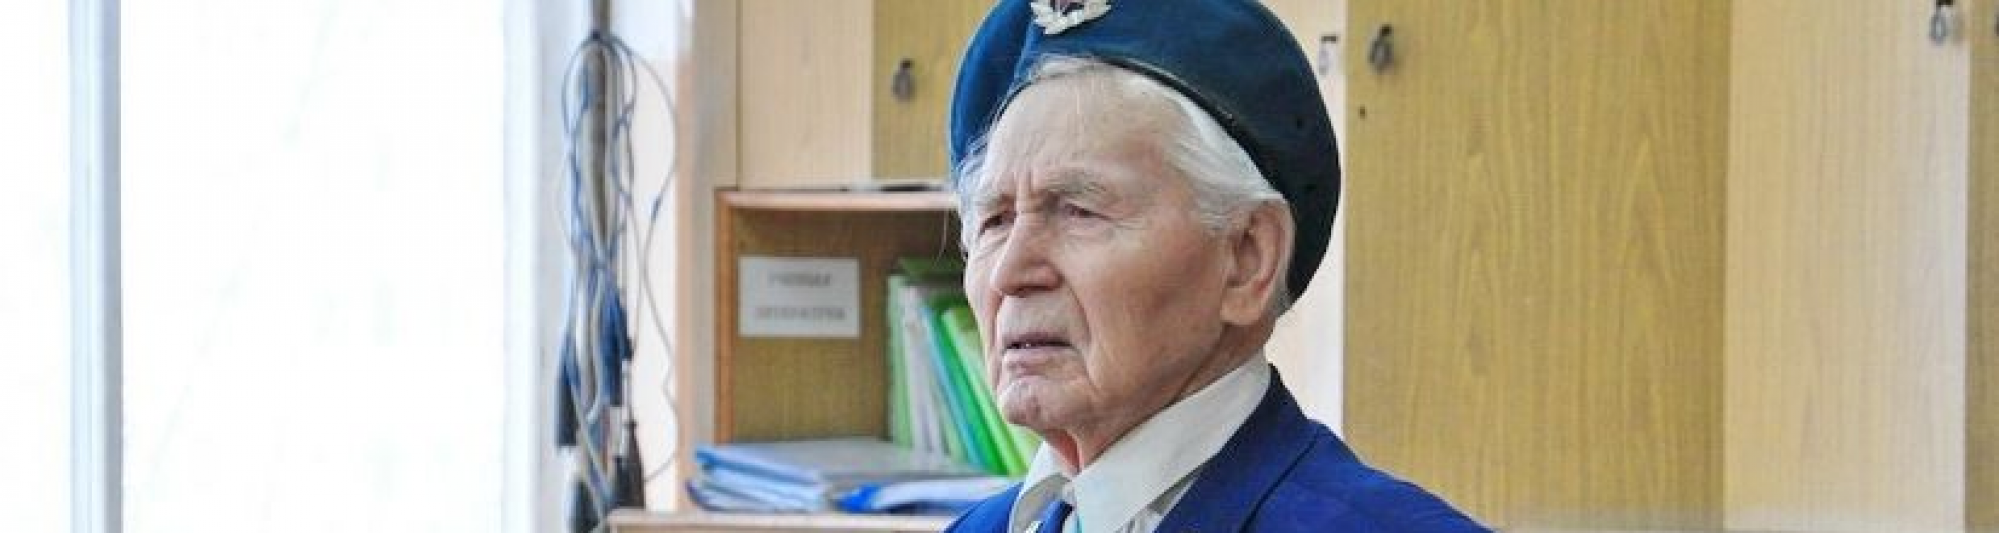 Фронтовик Федор Бондаренко обозначил перед депутатами ряд проблем ветеранов